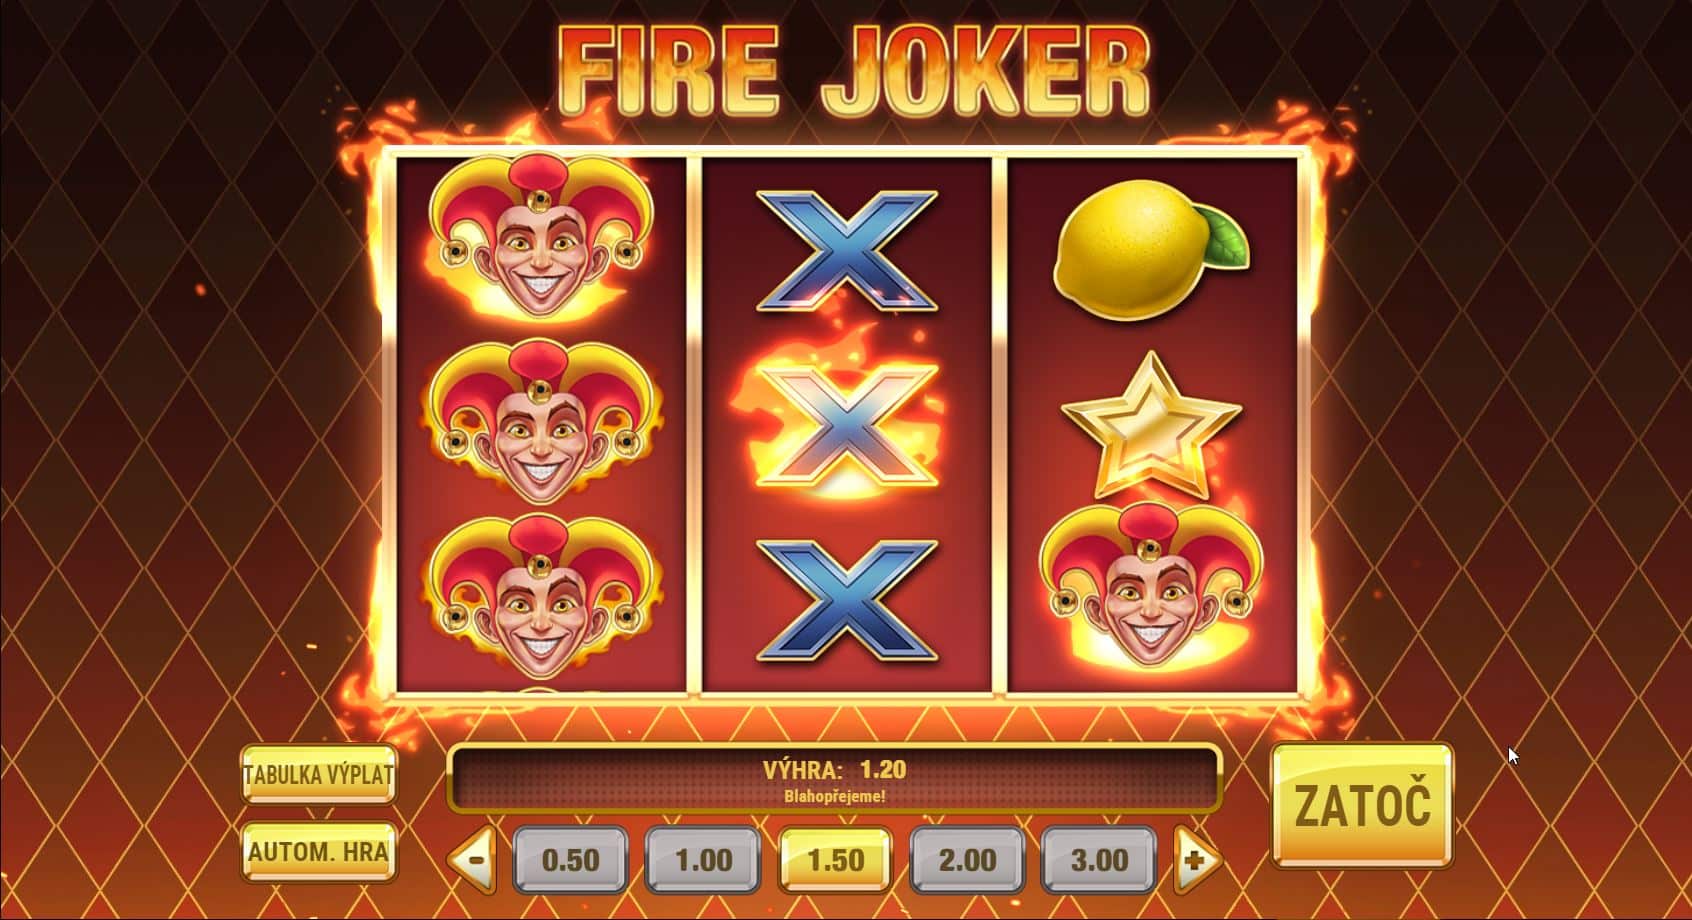 Speciální funkce Fire Joker